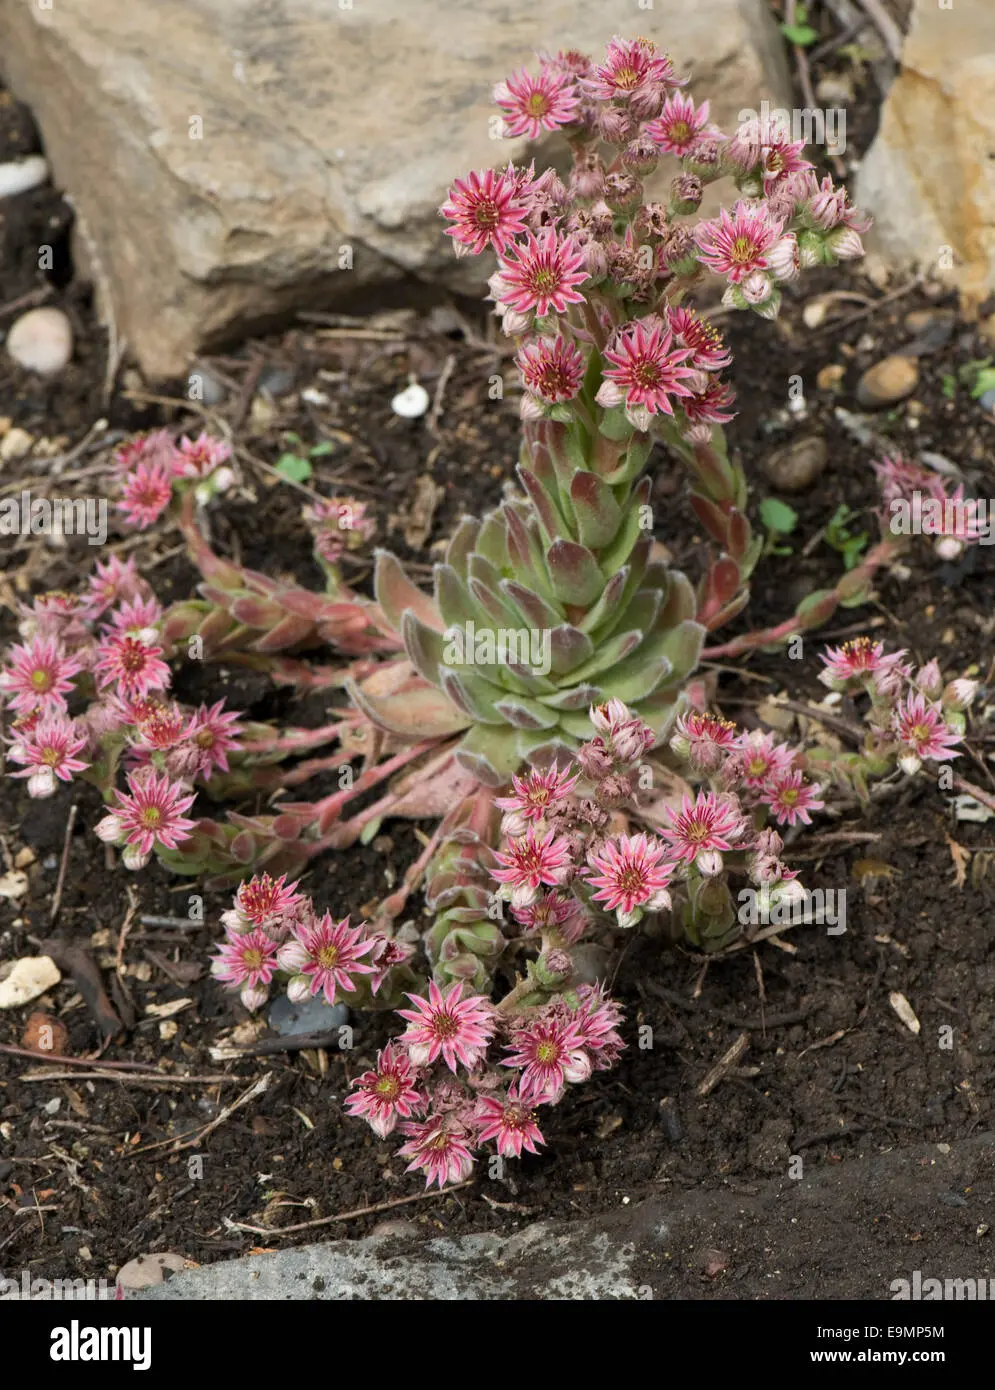 sempervivum fiore - Come si chiamano i fiori sempre vivi